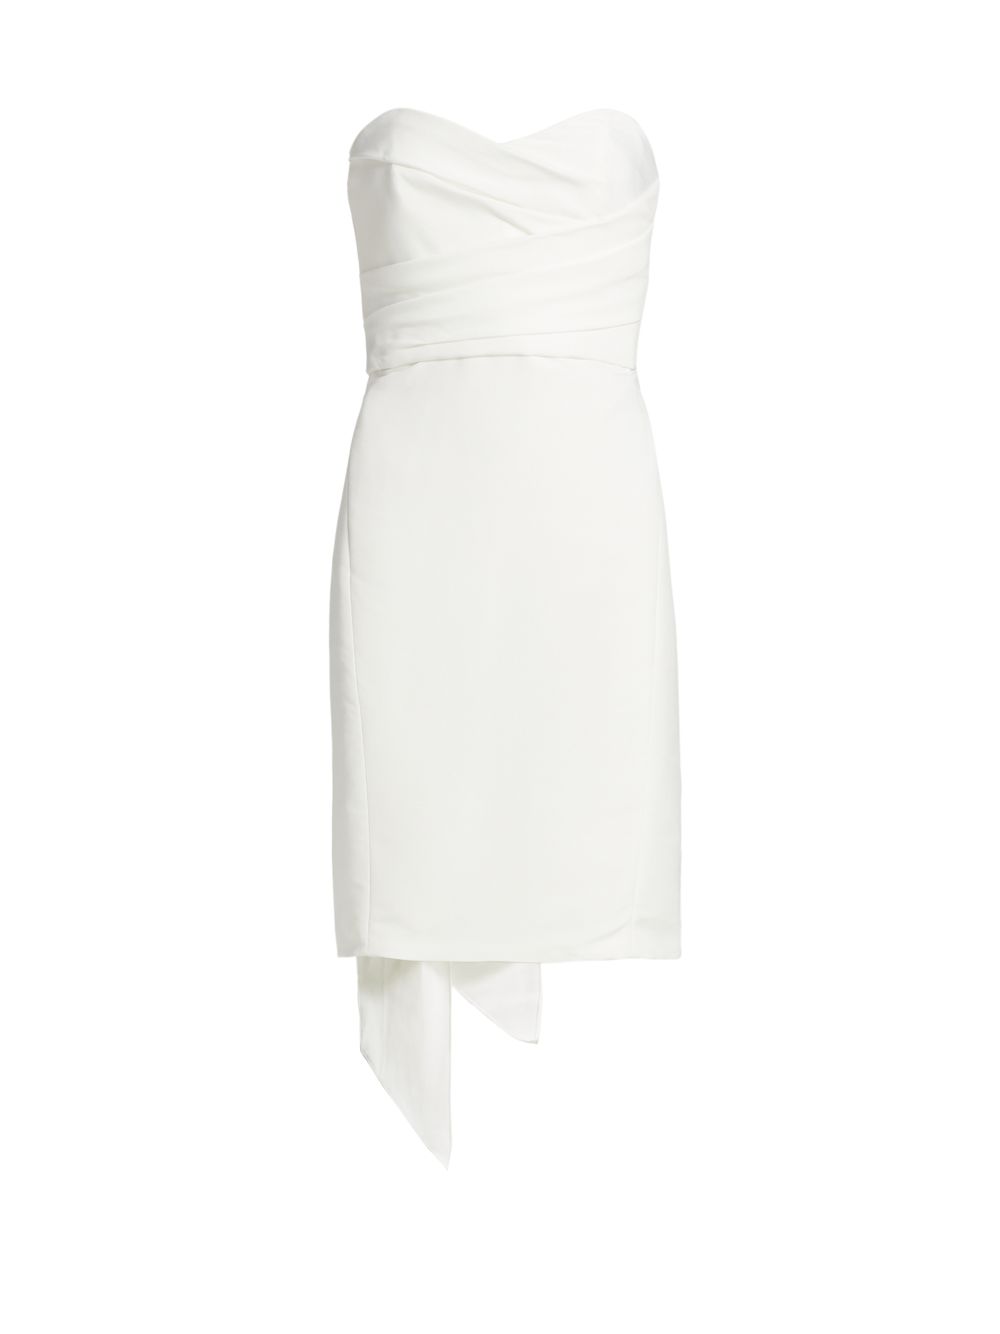 Шелковое платье с бантом из файля без бретелек Amsale, белый